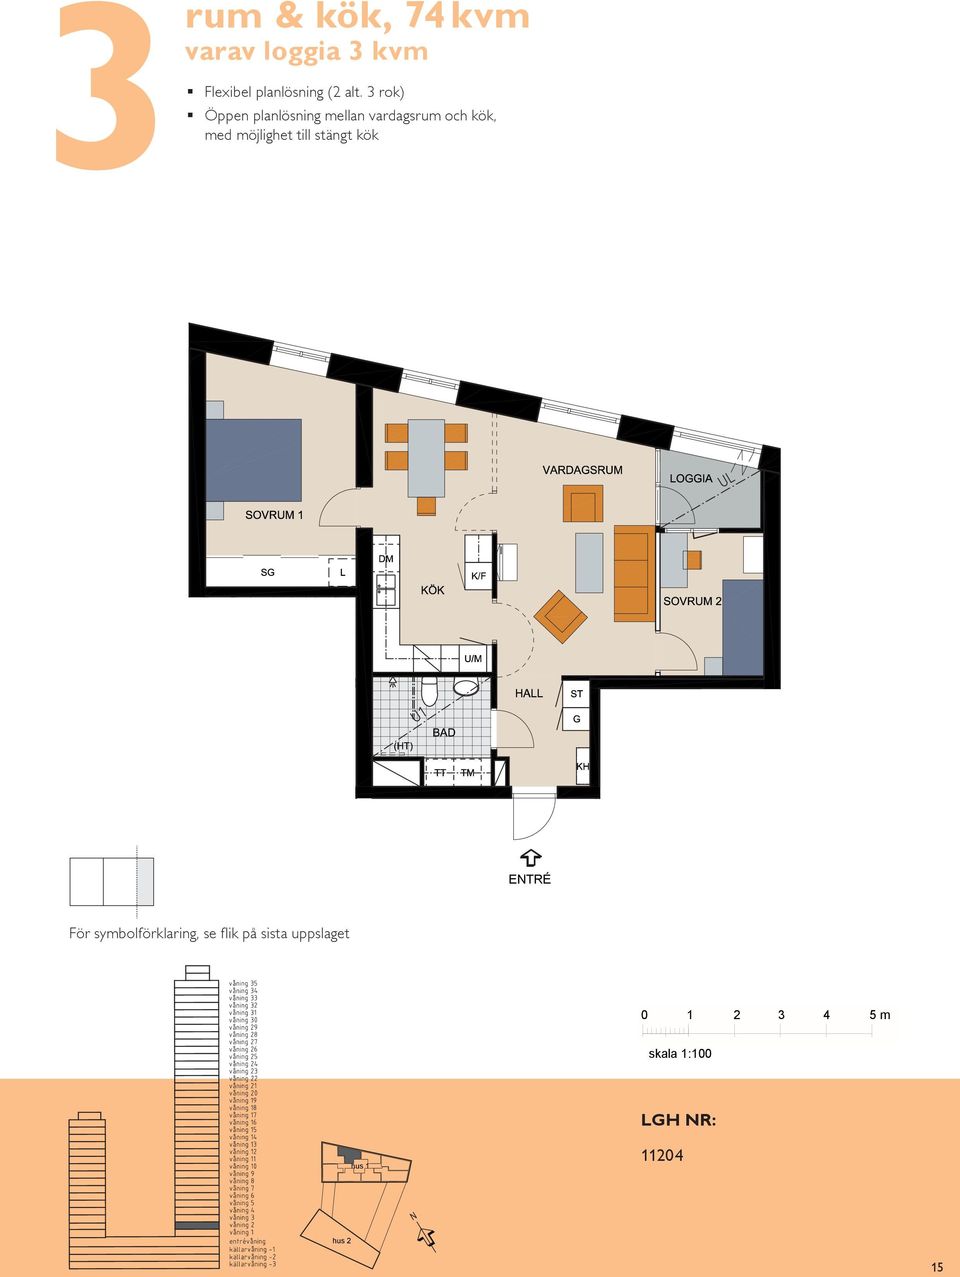 Sovrum med plats för två Balkong mot rum & kök, 7 m² varav loggia m² Flexibel planlösning ( alt.